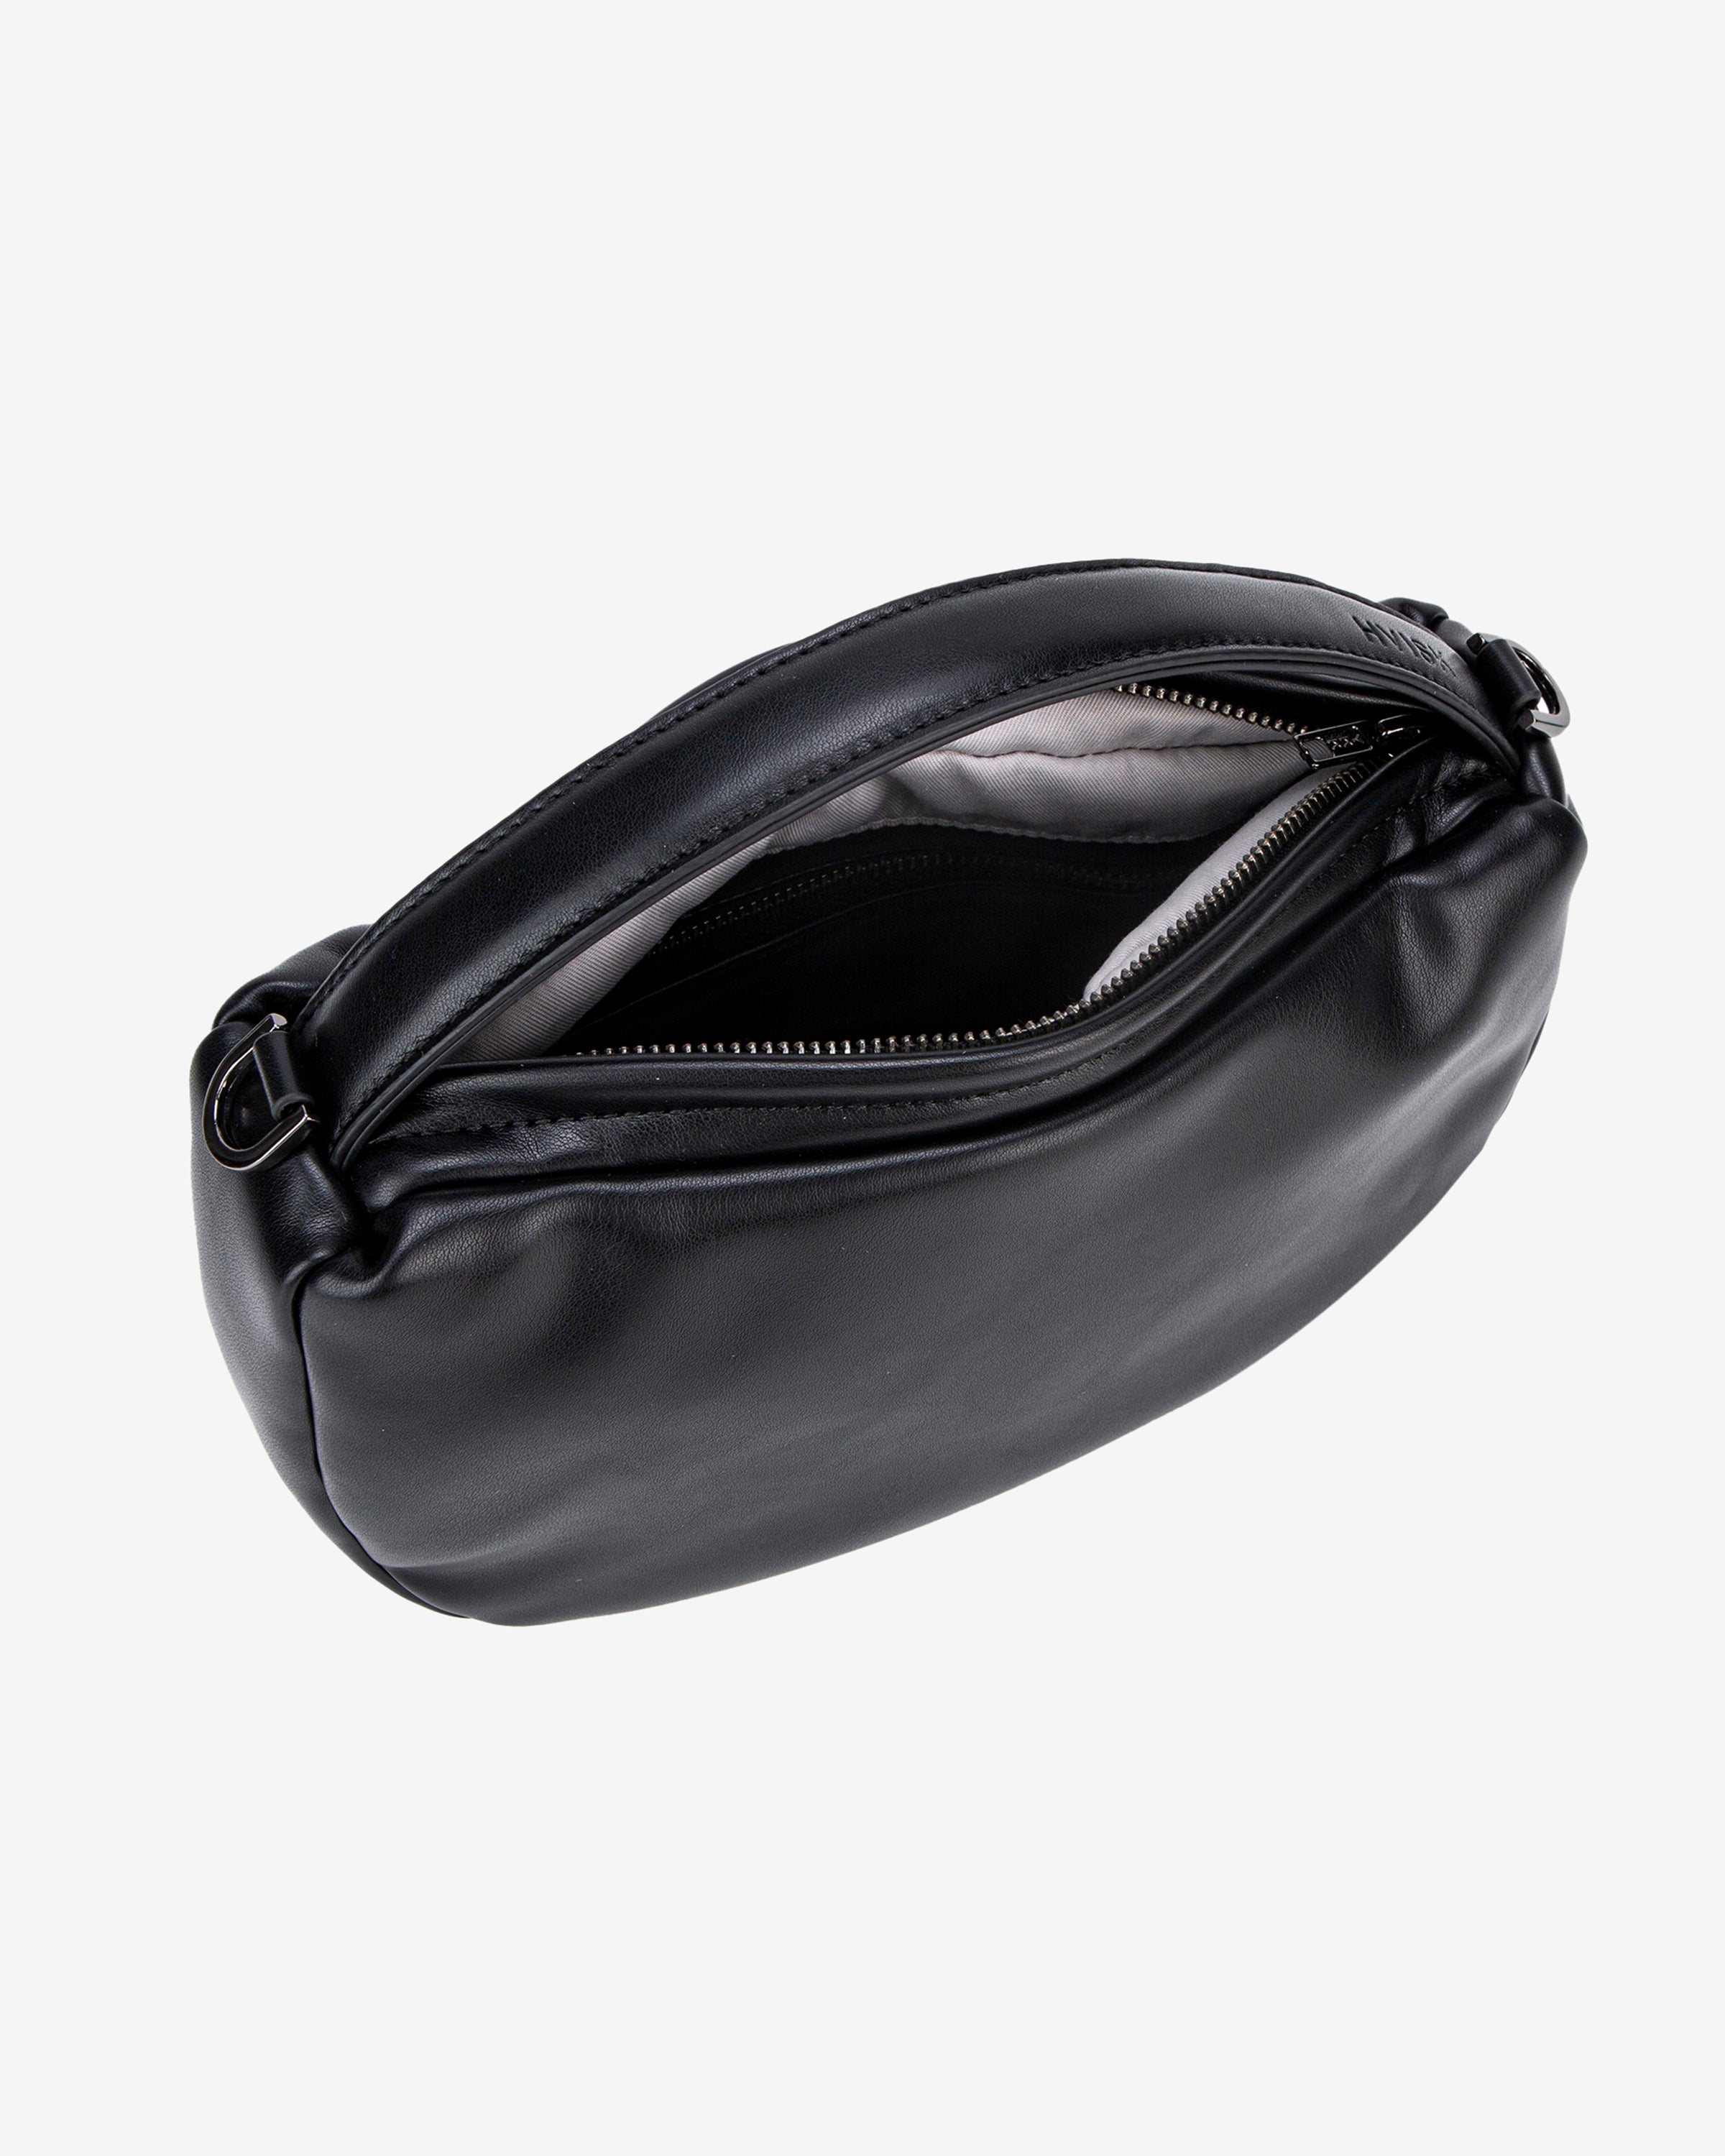 HVISK TATE SOFT STRUCTURE Handle Bag 009 Black